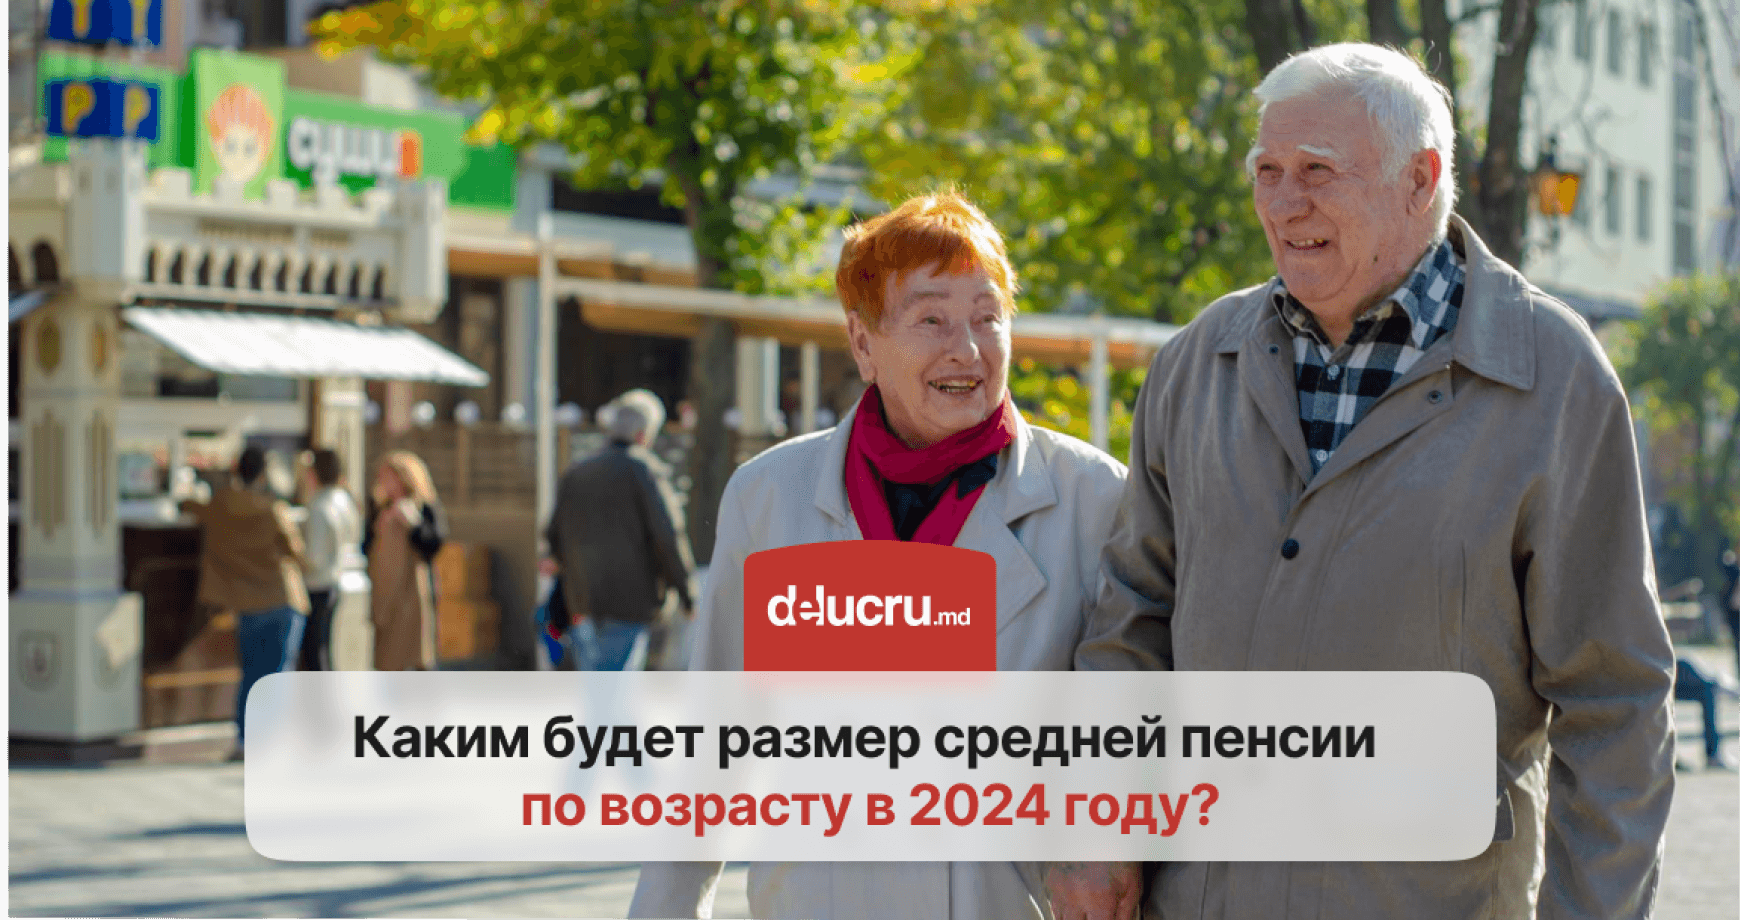 В Молдове увеличится размер средней пенсии по возрасту и появятся новые социальные пособия